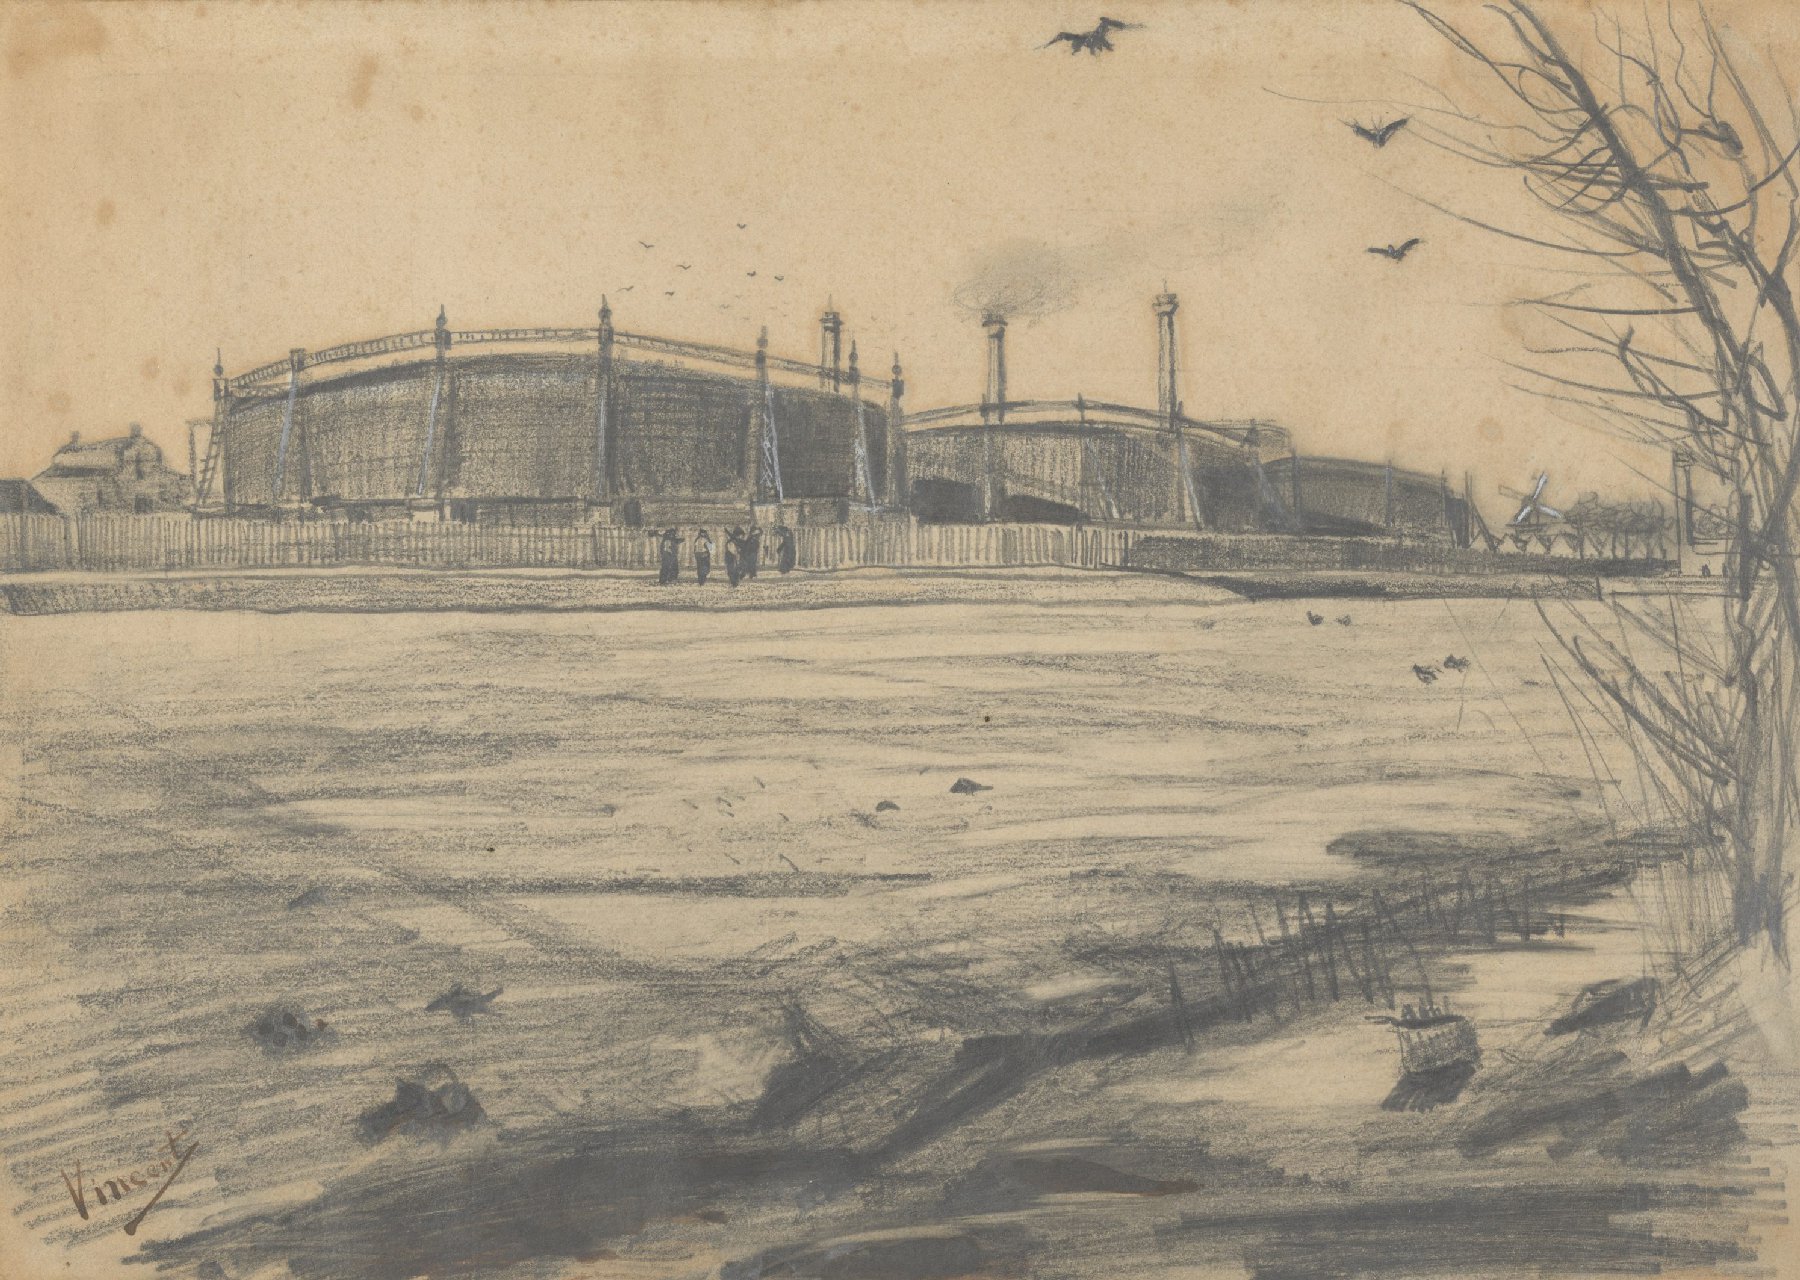 Gasfabriek Vincent van Gogh (1853 - 1890), Den Haag, maart 1882